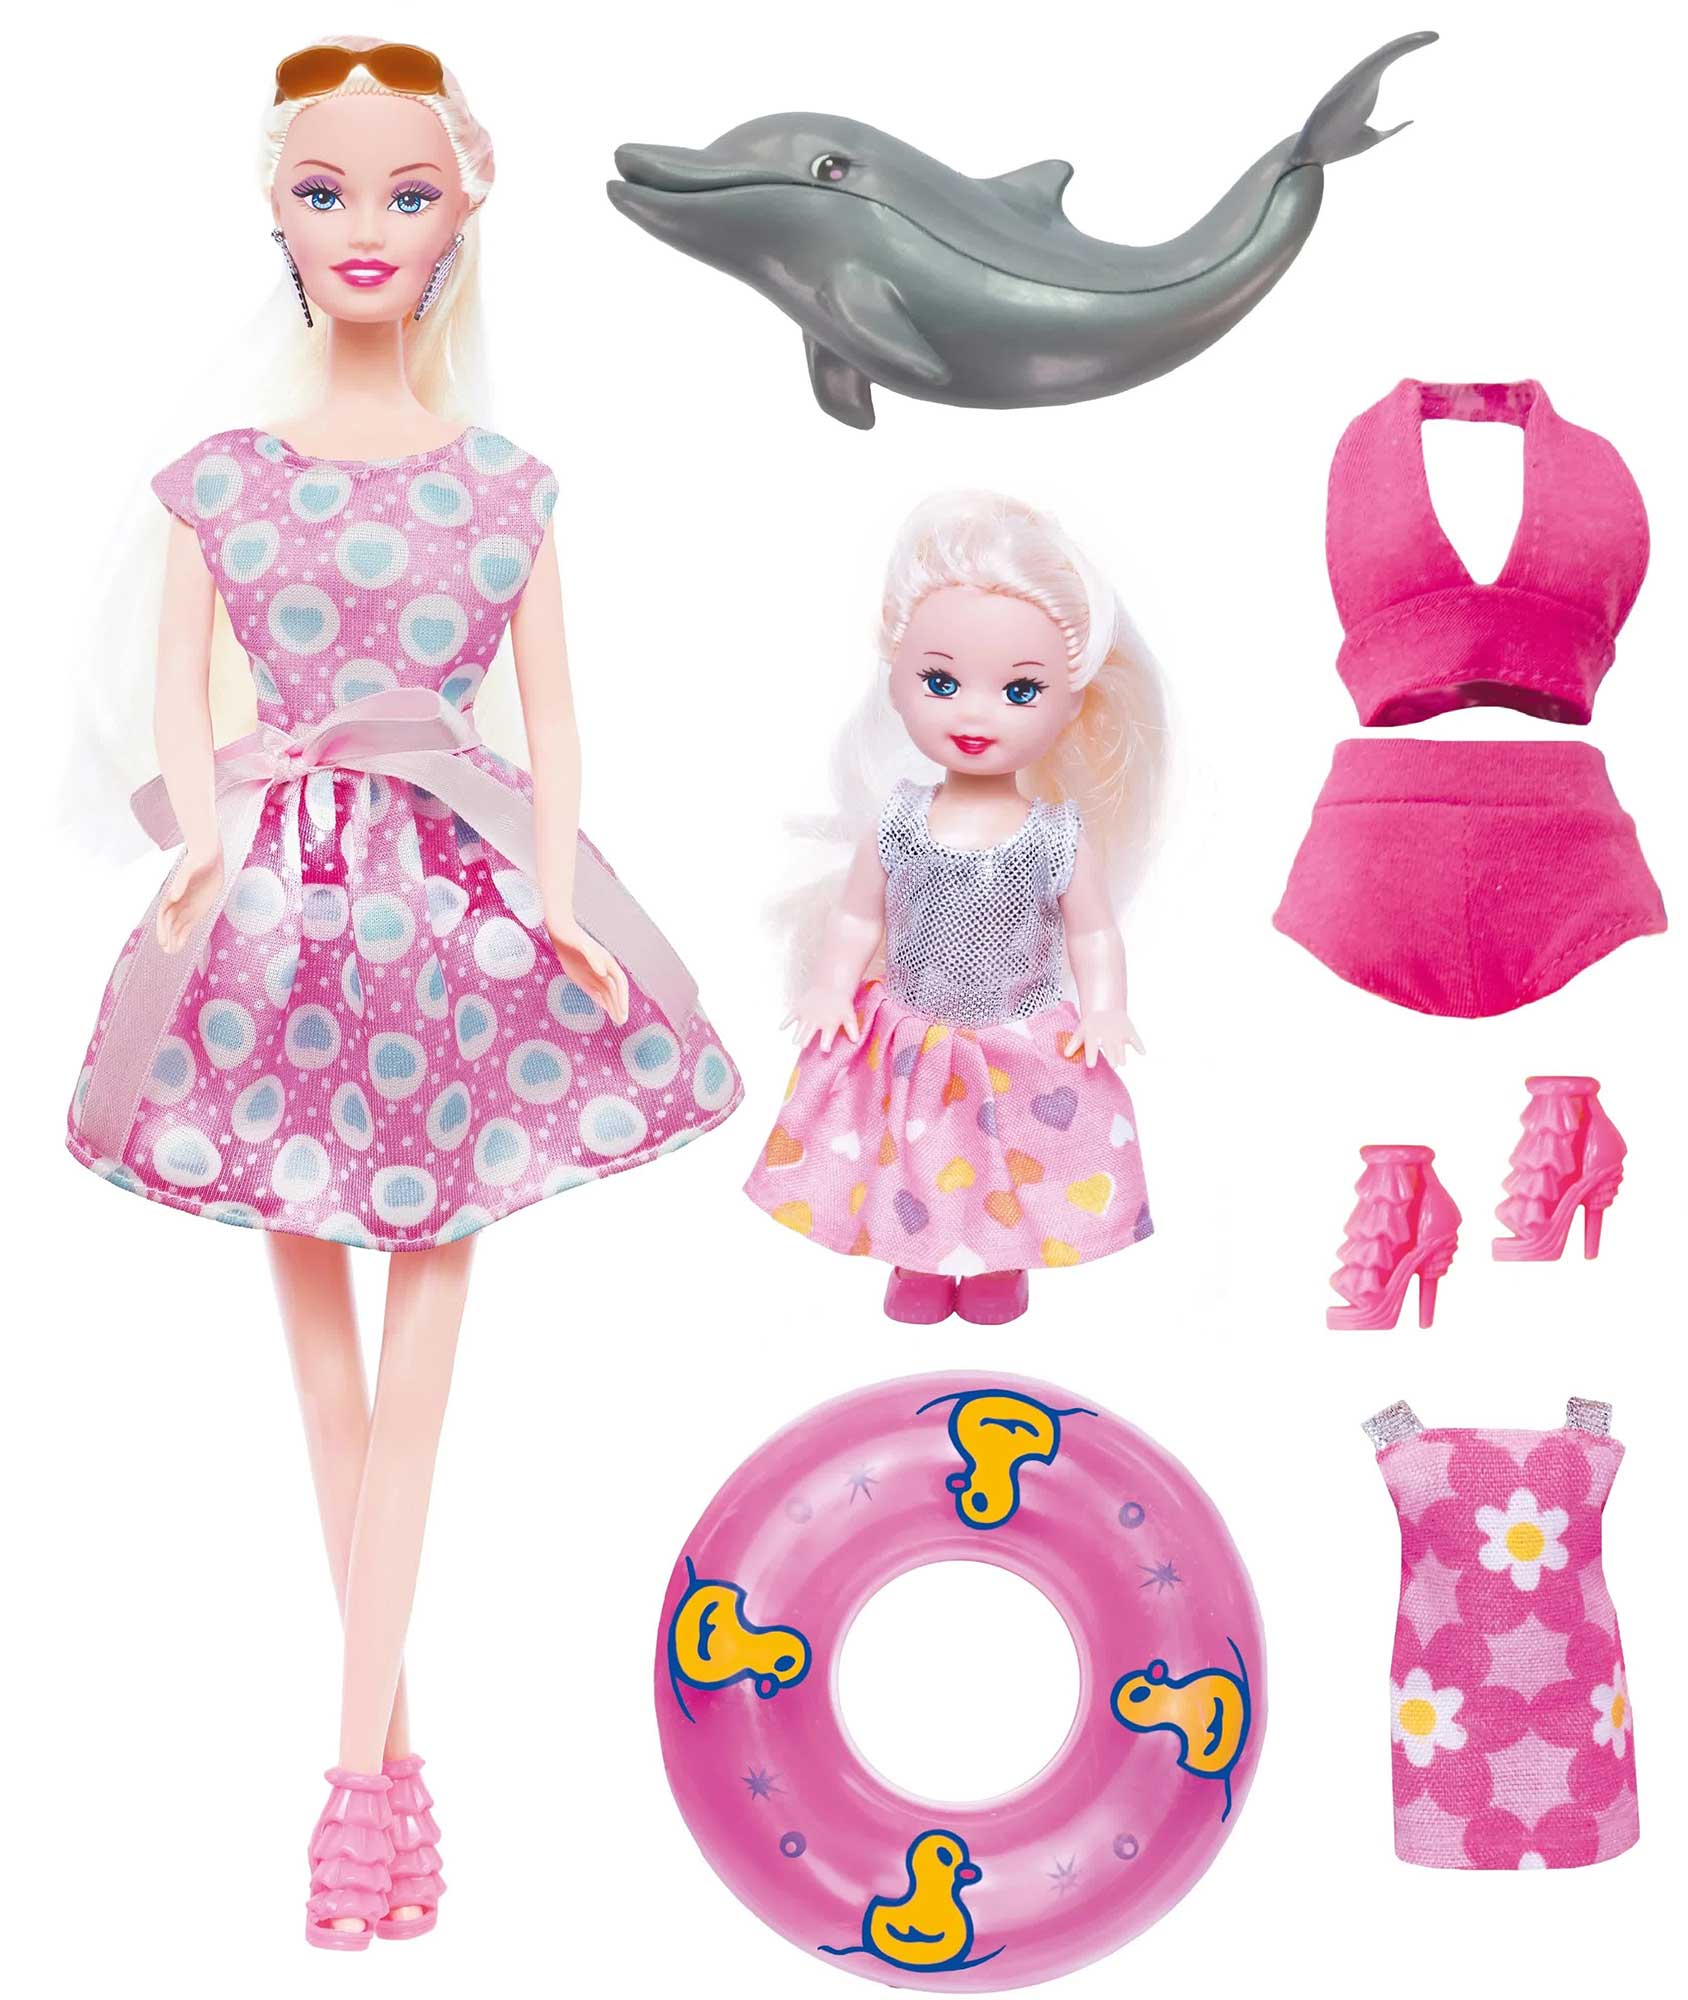 Кукла Ася ToysLab Морское приключение набор с мини куклой арт.35103